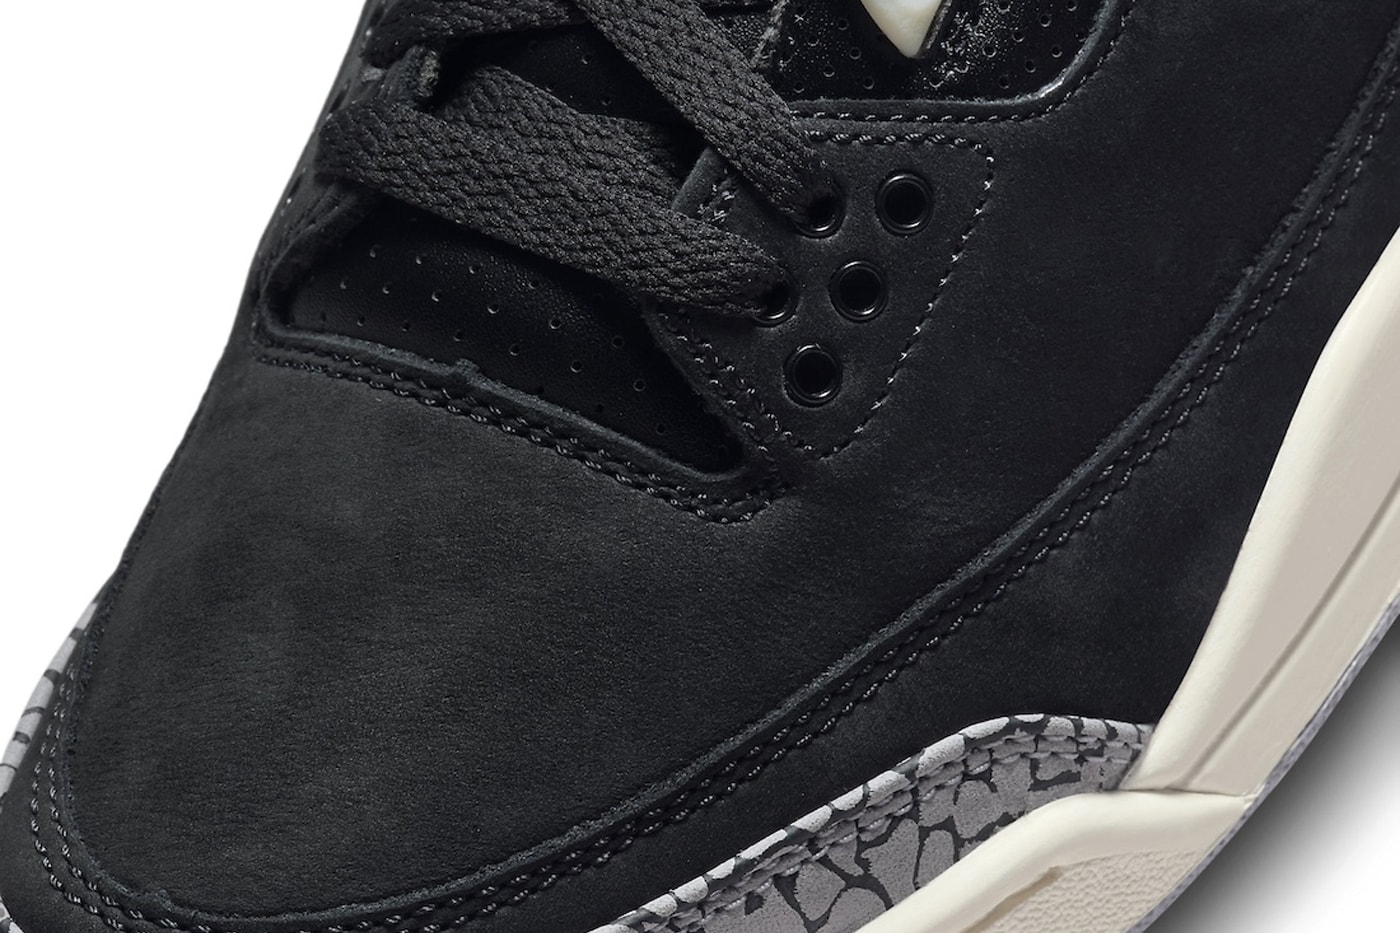 エアジョーダン 3 の新色 “オフ ノワール” の国内発売情報が解禁 Air Jordan 3 "Off Noir" Is Slated to Release This Month CK9246-001 Off Noir/Black-Coconut Milk-Cement Grey michael jordan brand swoosh jumpman nike